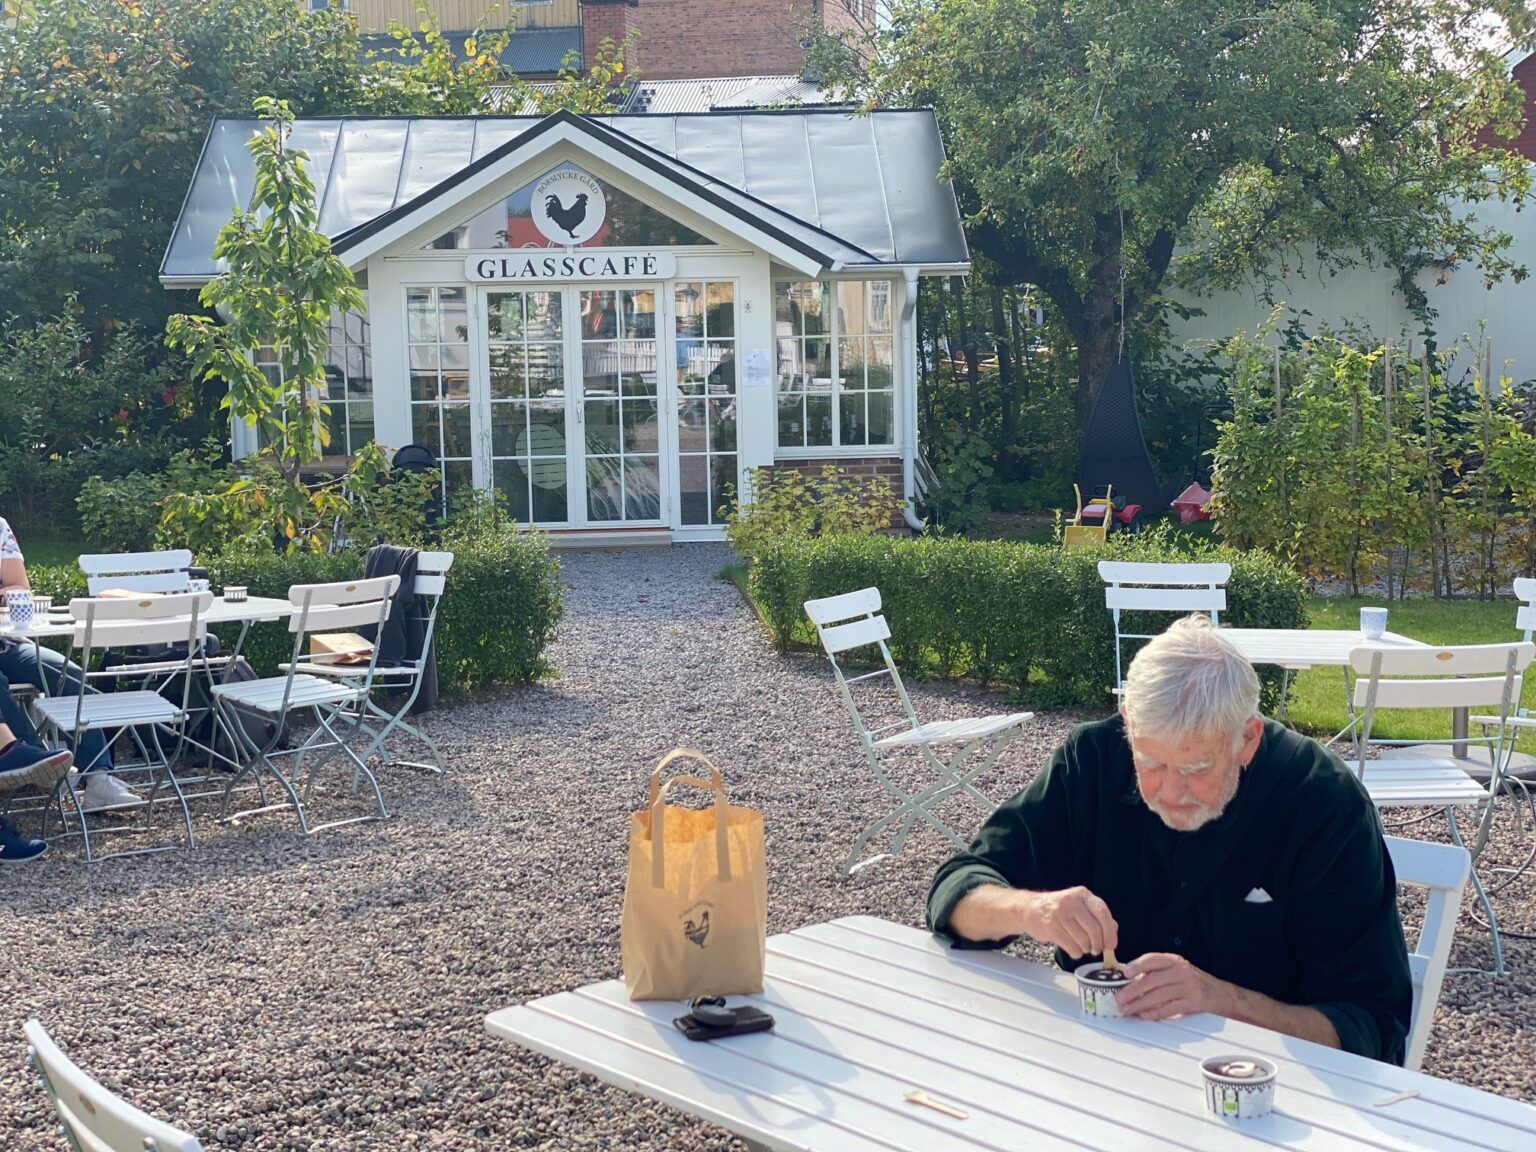 En man sitter och äter glass utomhus vid ett vitt bord. I bakgrundens ses ett inglasat glasscafe vid en grusgång.